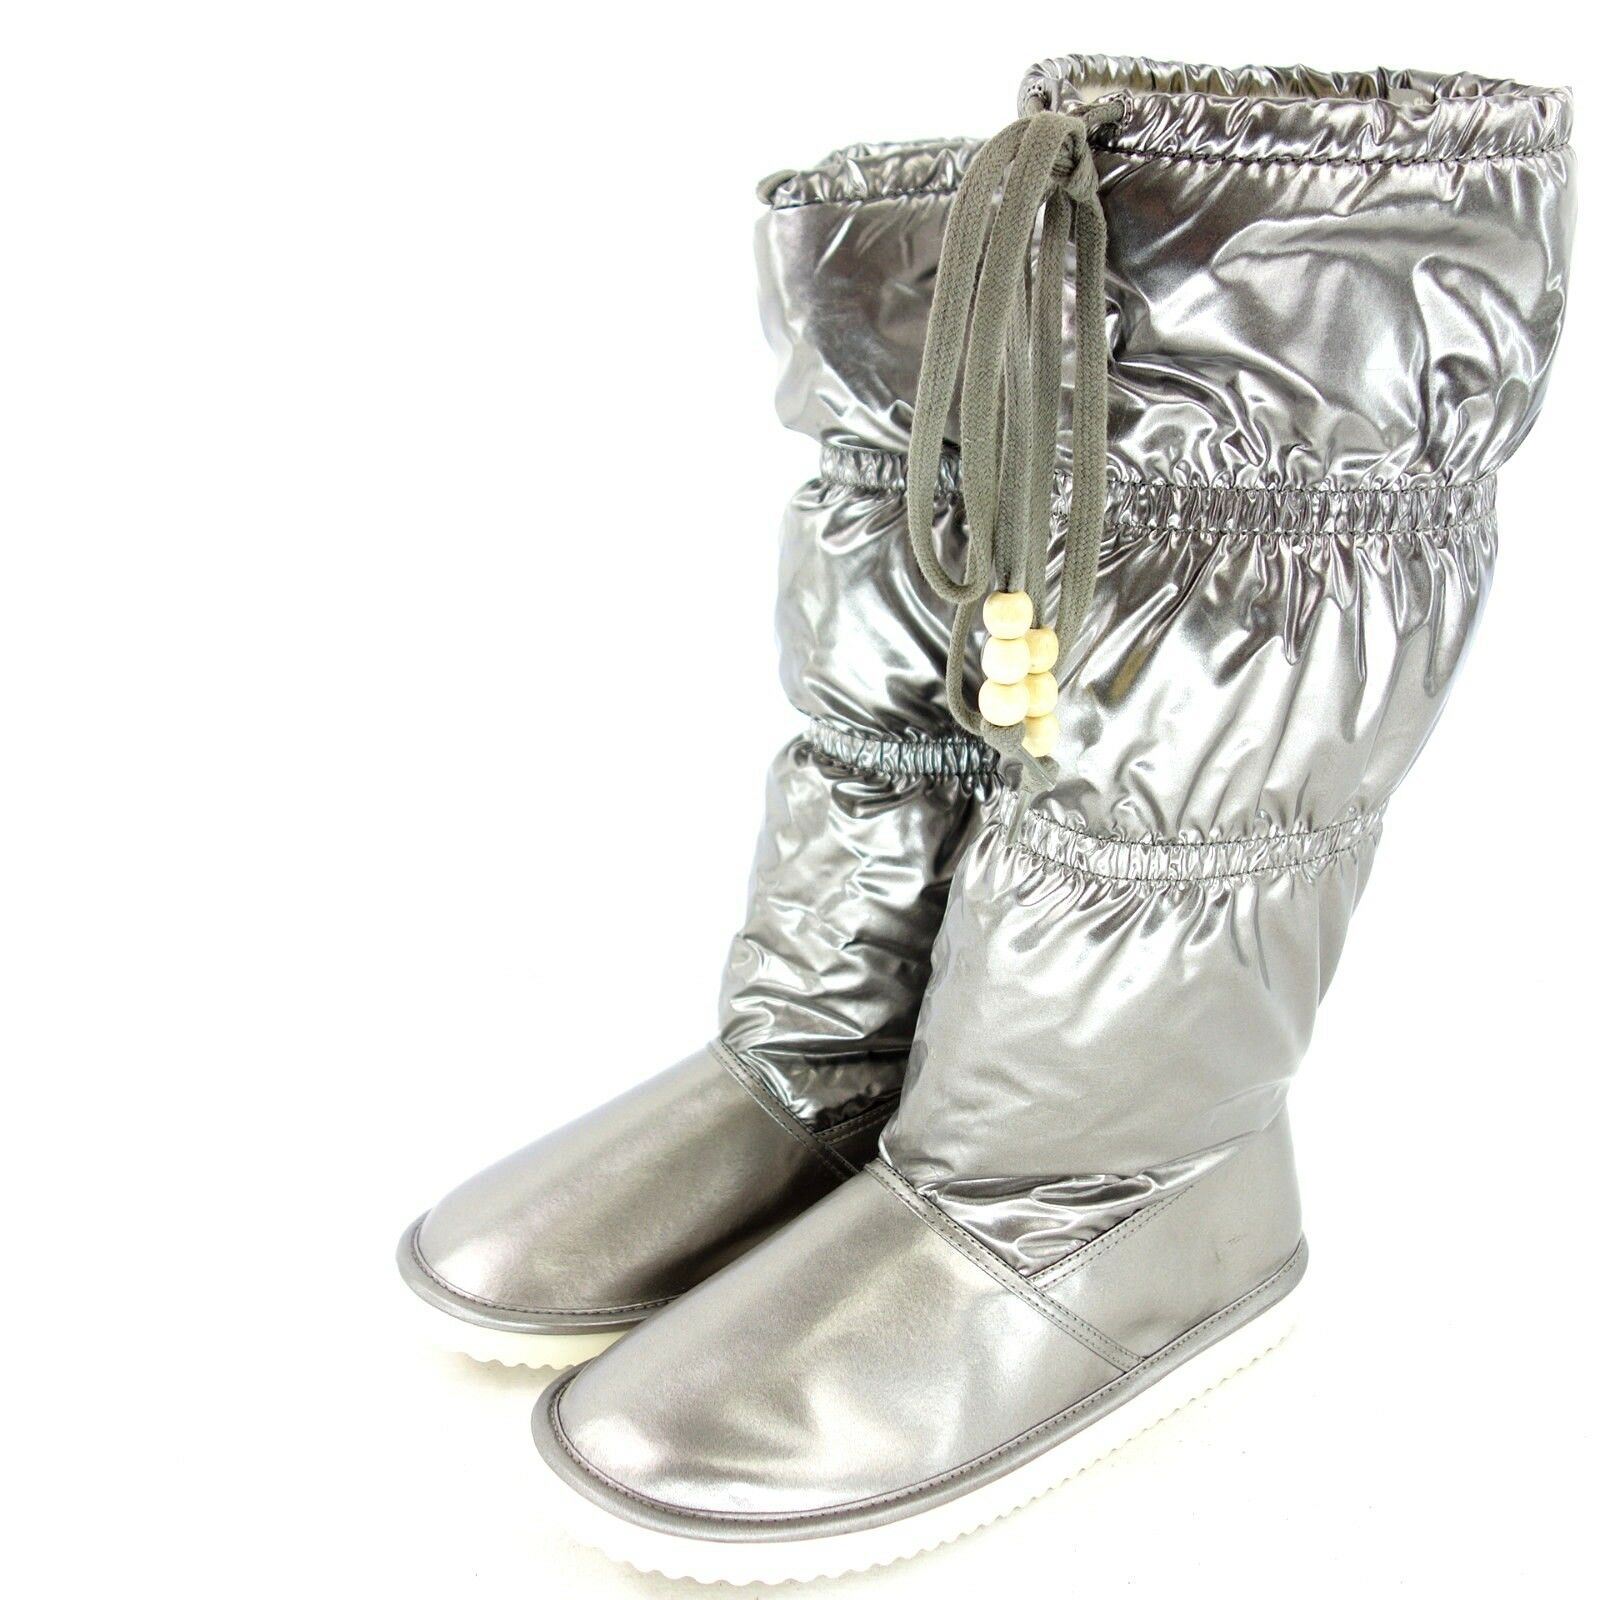 FLIP FLOP Damen Damenschuhe Stiefel Boots Schuhe Gefüttert Metallic Bronze Neu - EUR 37